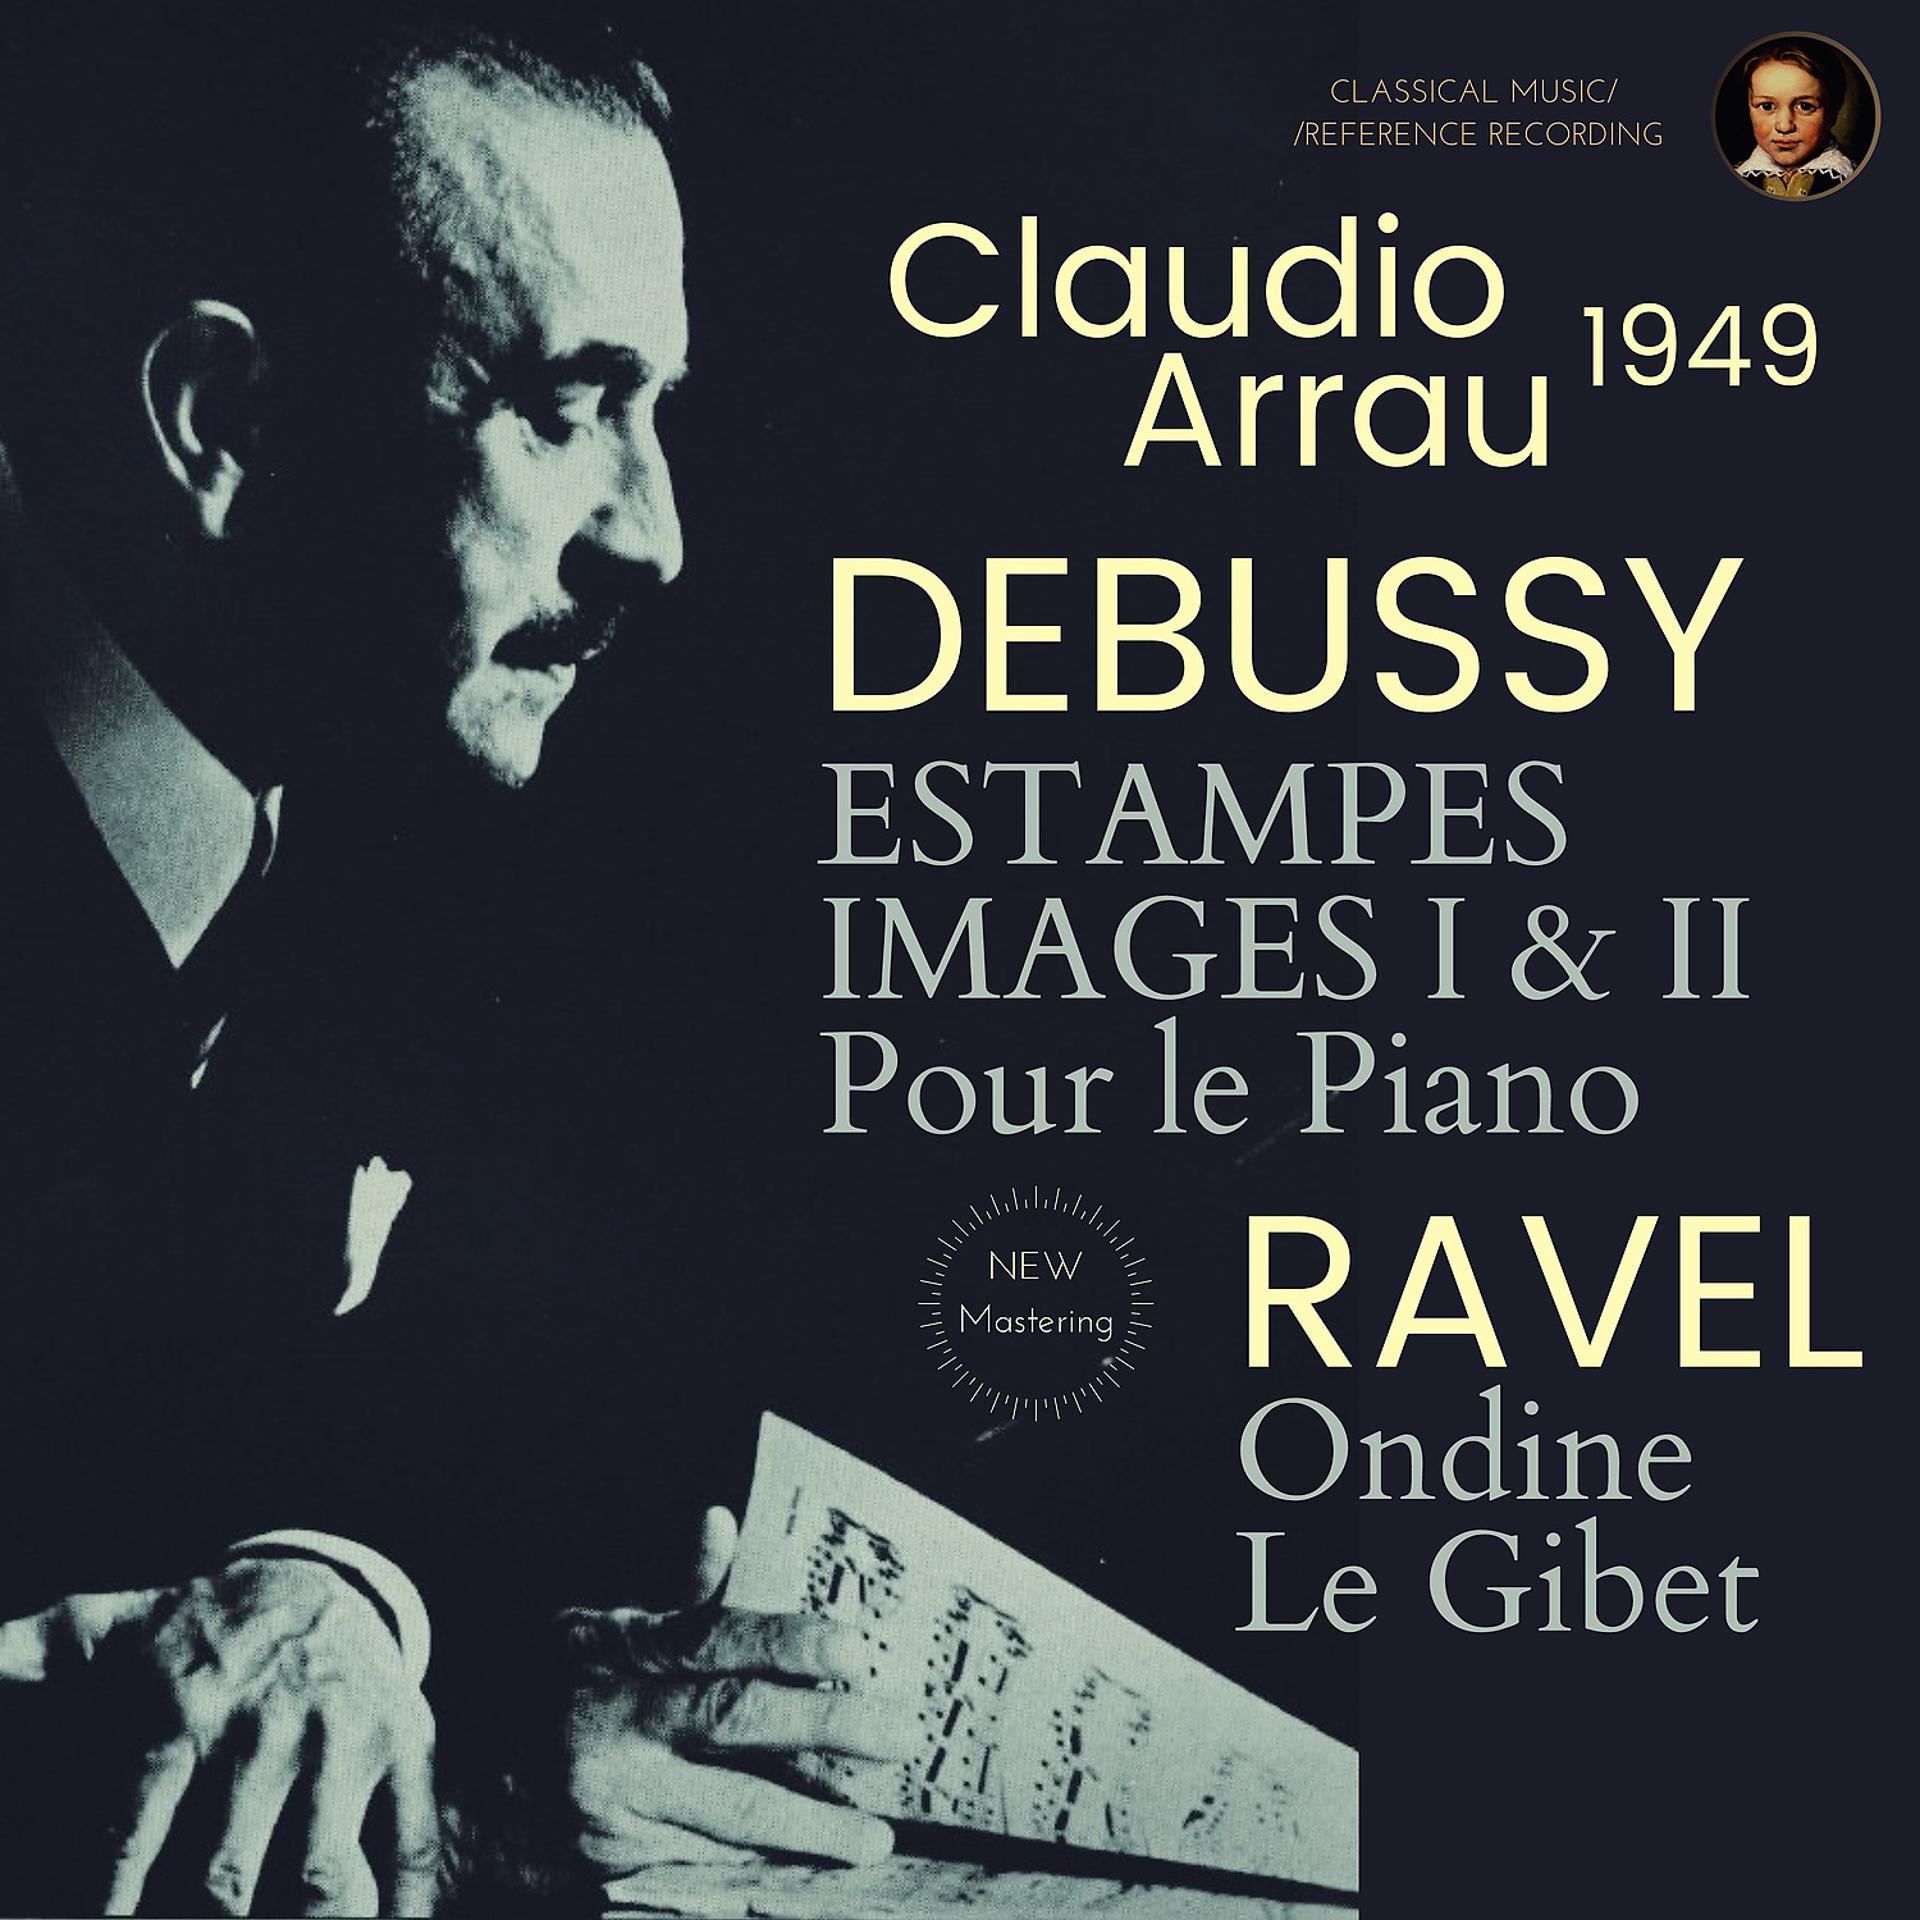 Постер альбома Debussy by Claudio Arrau: Estampes, Image I & II, Pour le Piano